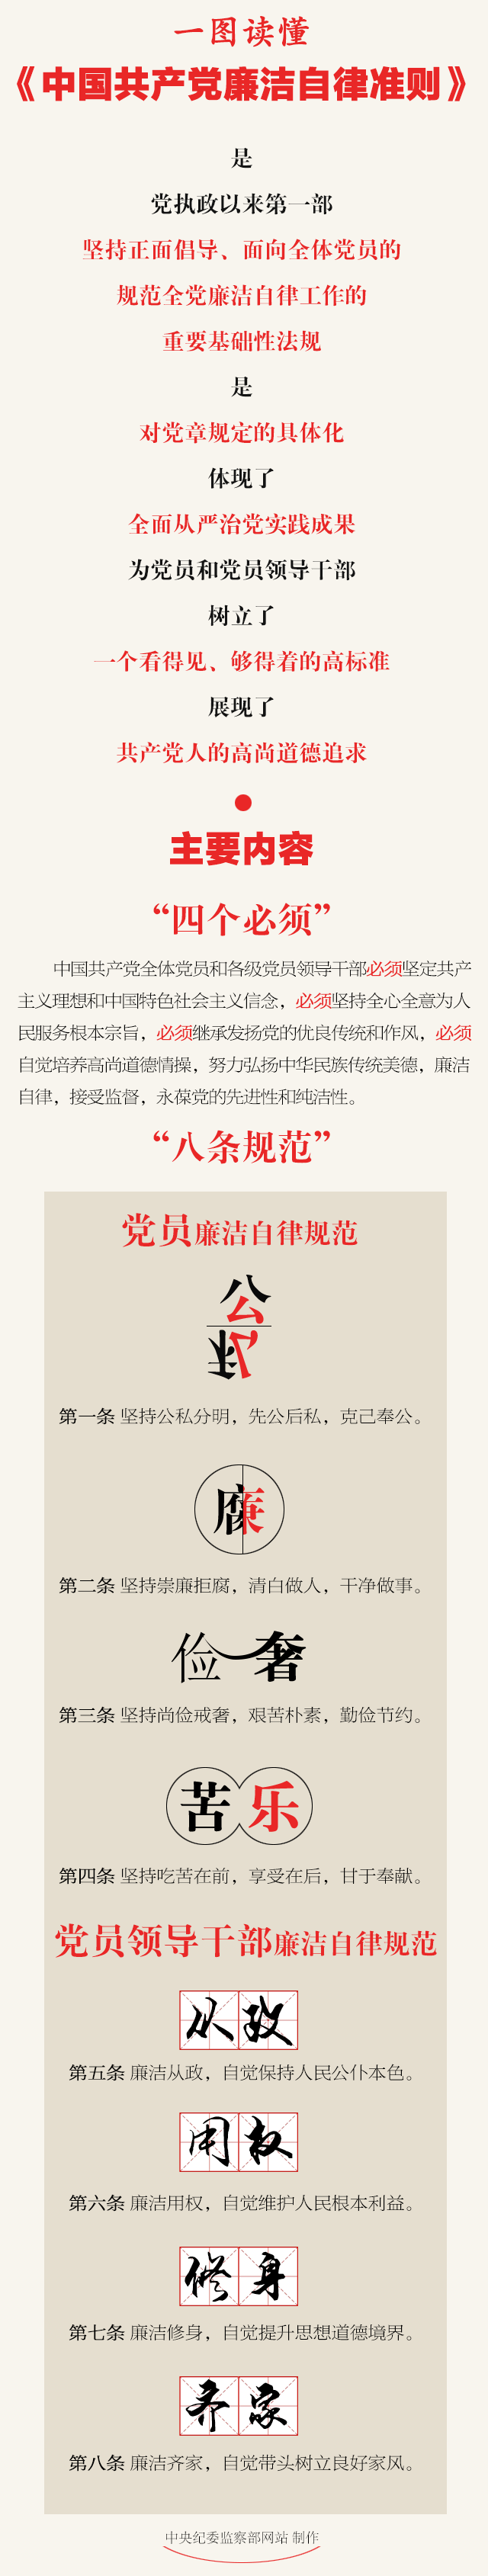 一张图读懂《中国共产党廉洁自律准则》.png